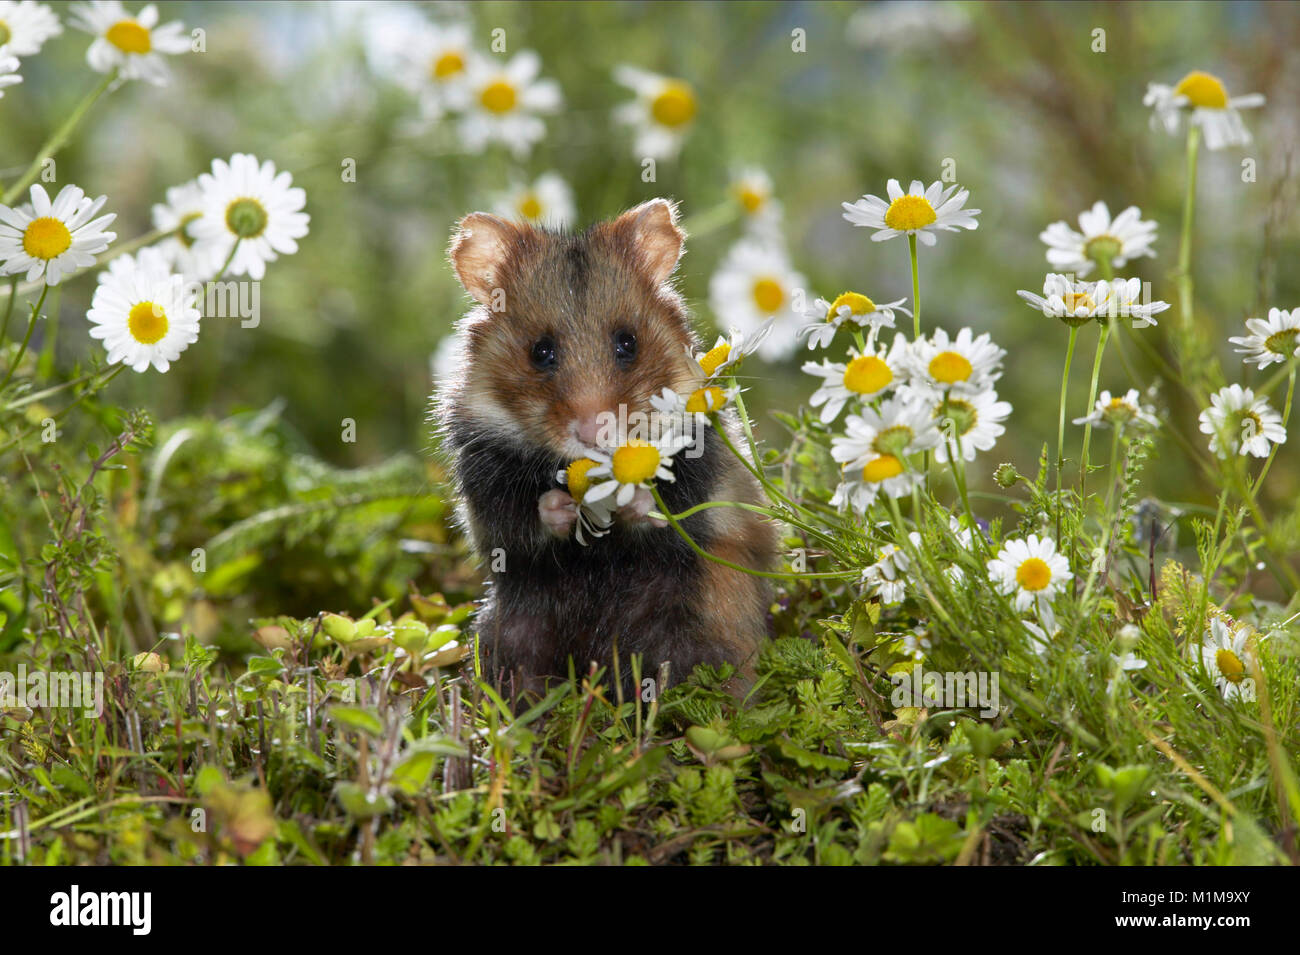 Hamster européen (Cricetus cricetus) mangeant de la camomille florale. Allemagne. Banque D'Images